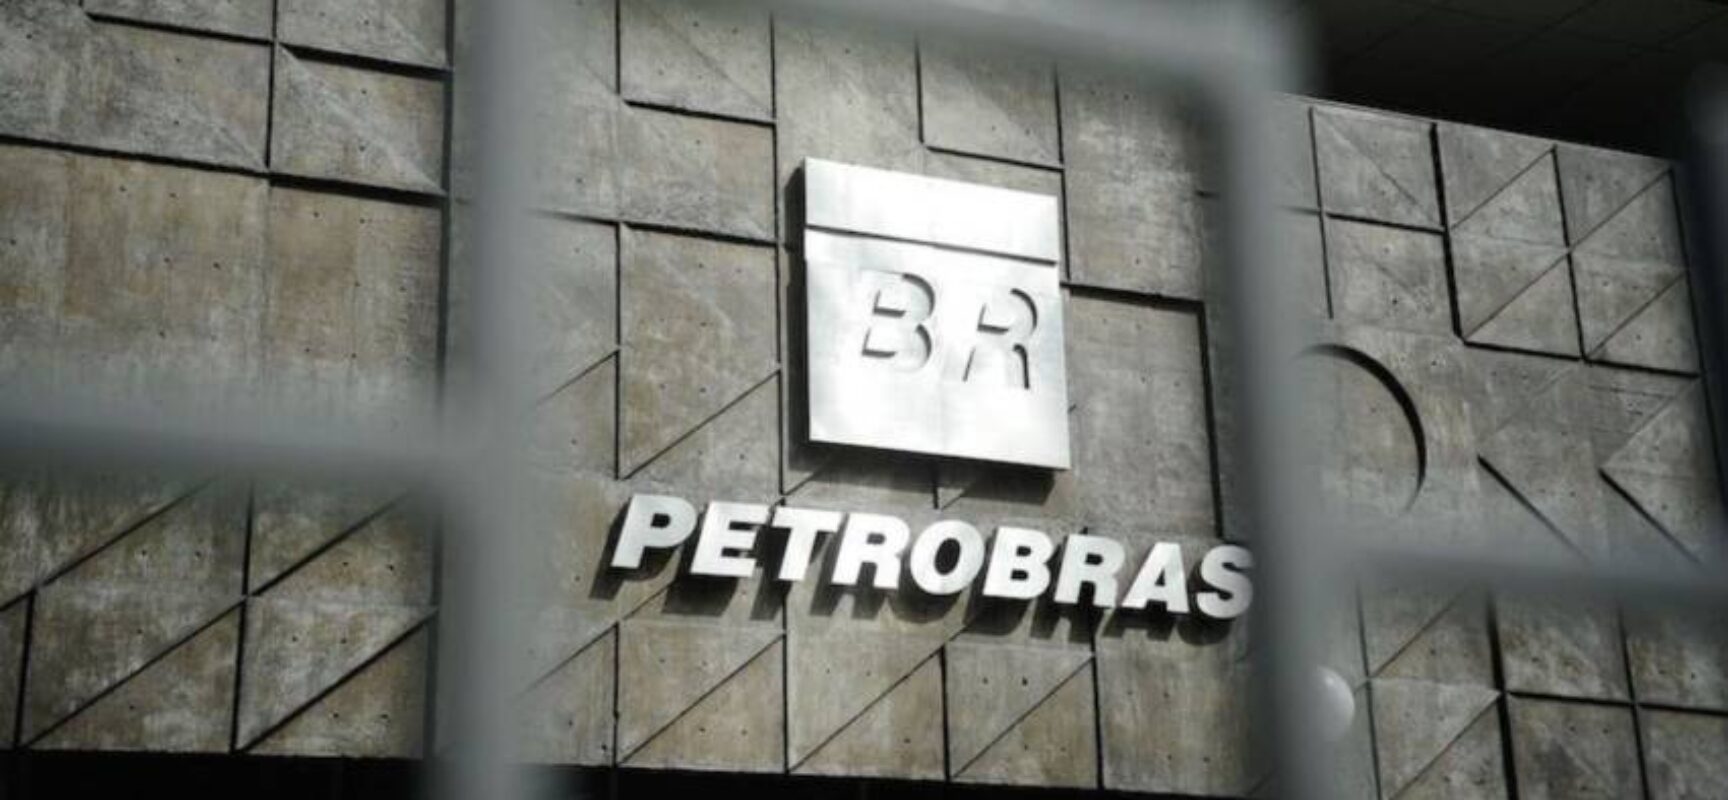 Mudanças aprovadas na diretoria da Petrobras começam a valer nesta segunda